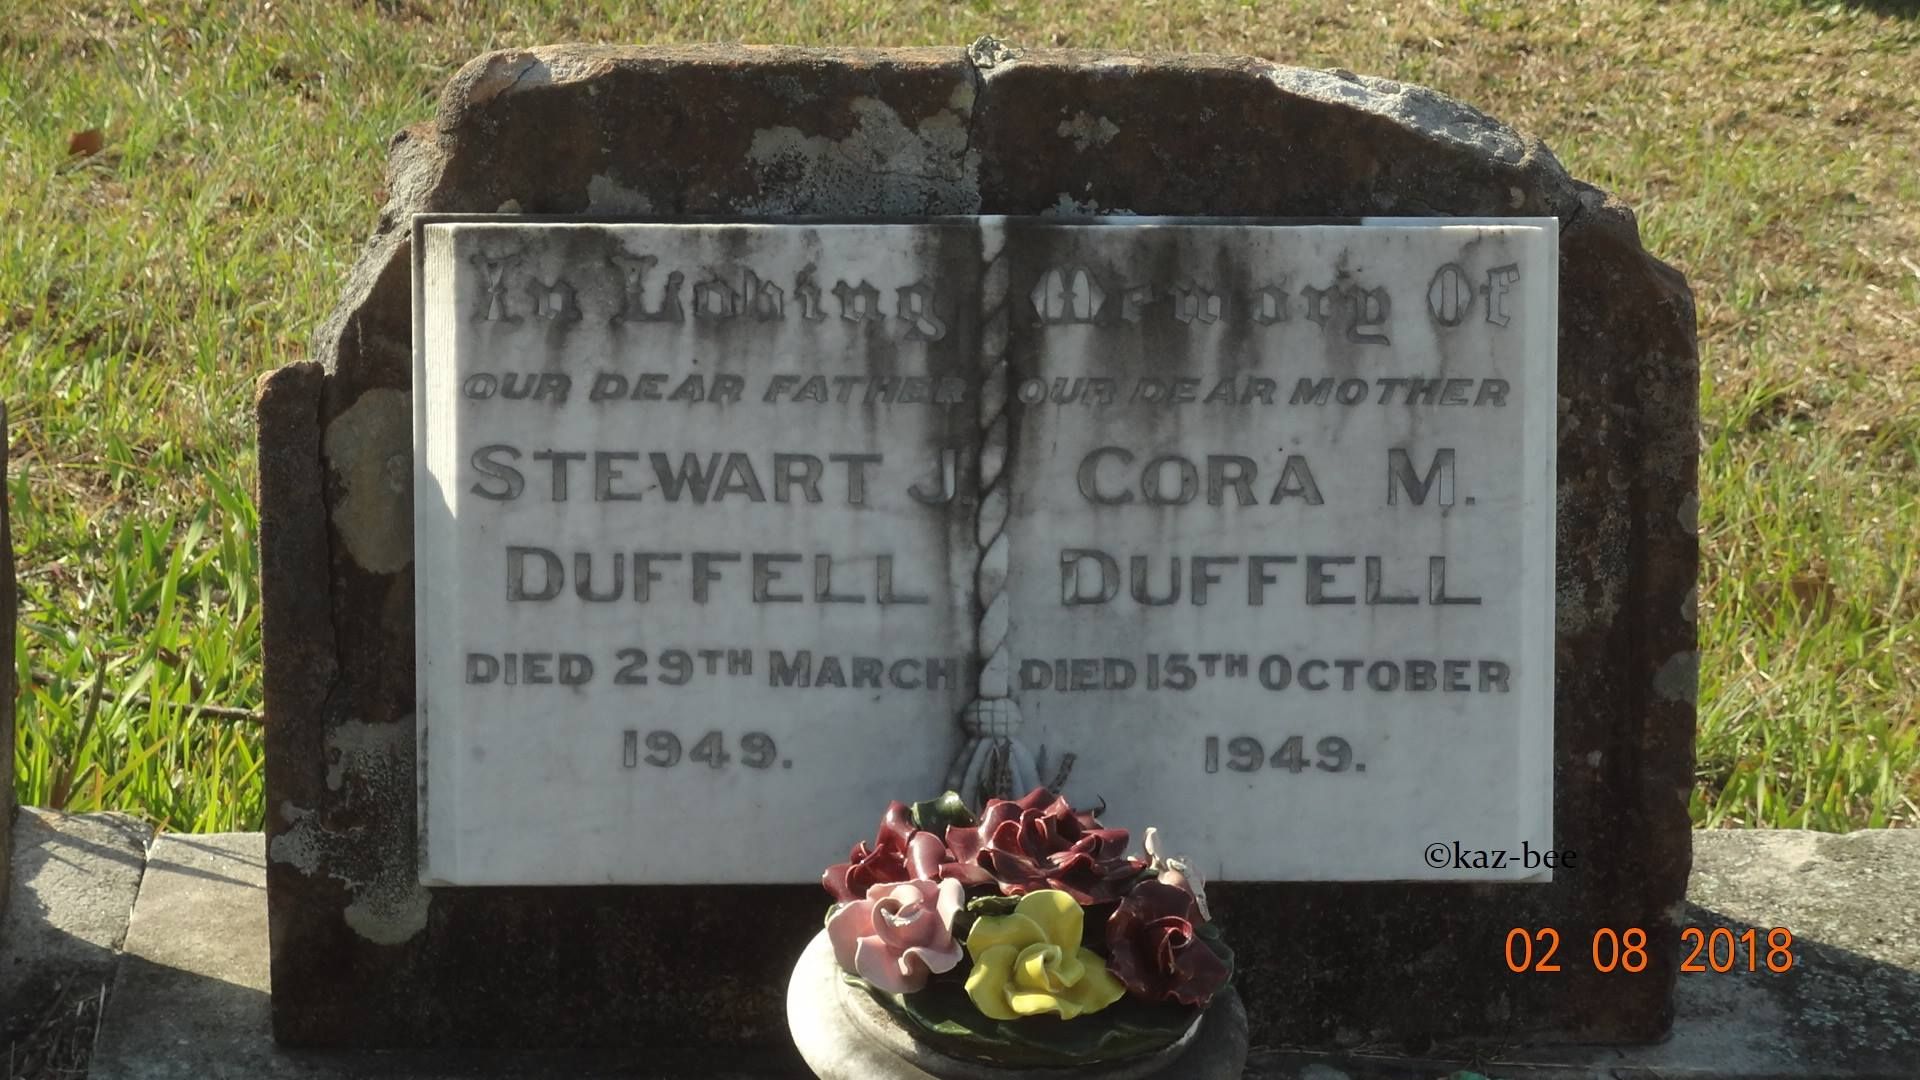 Cora Duffell